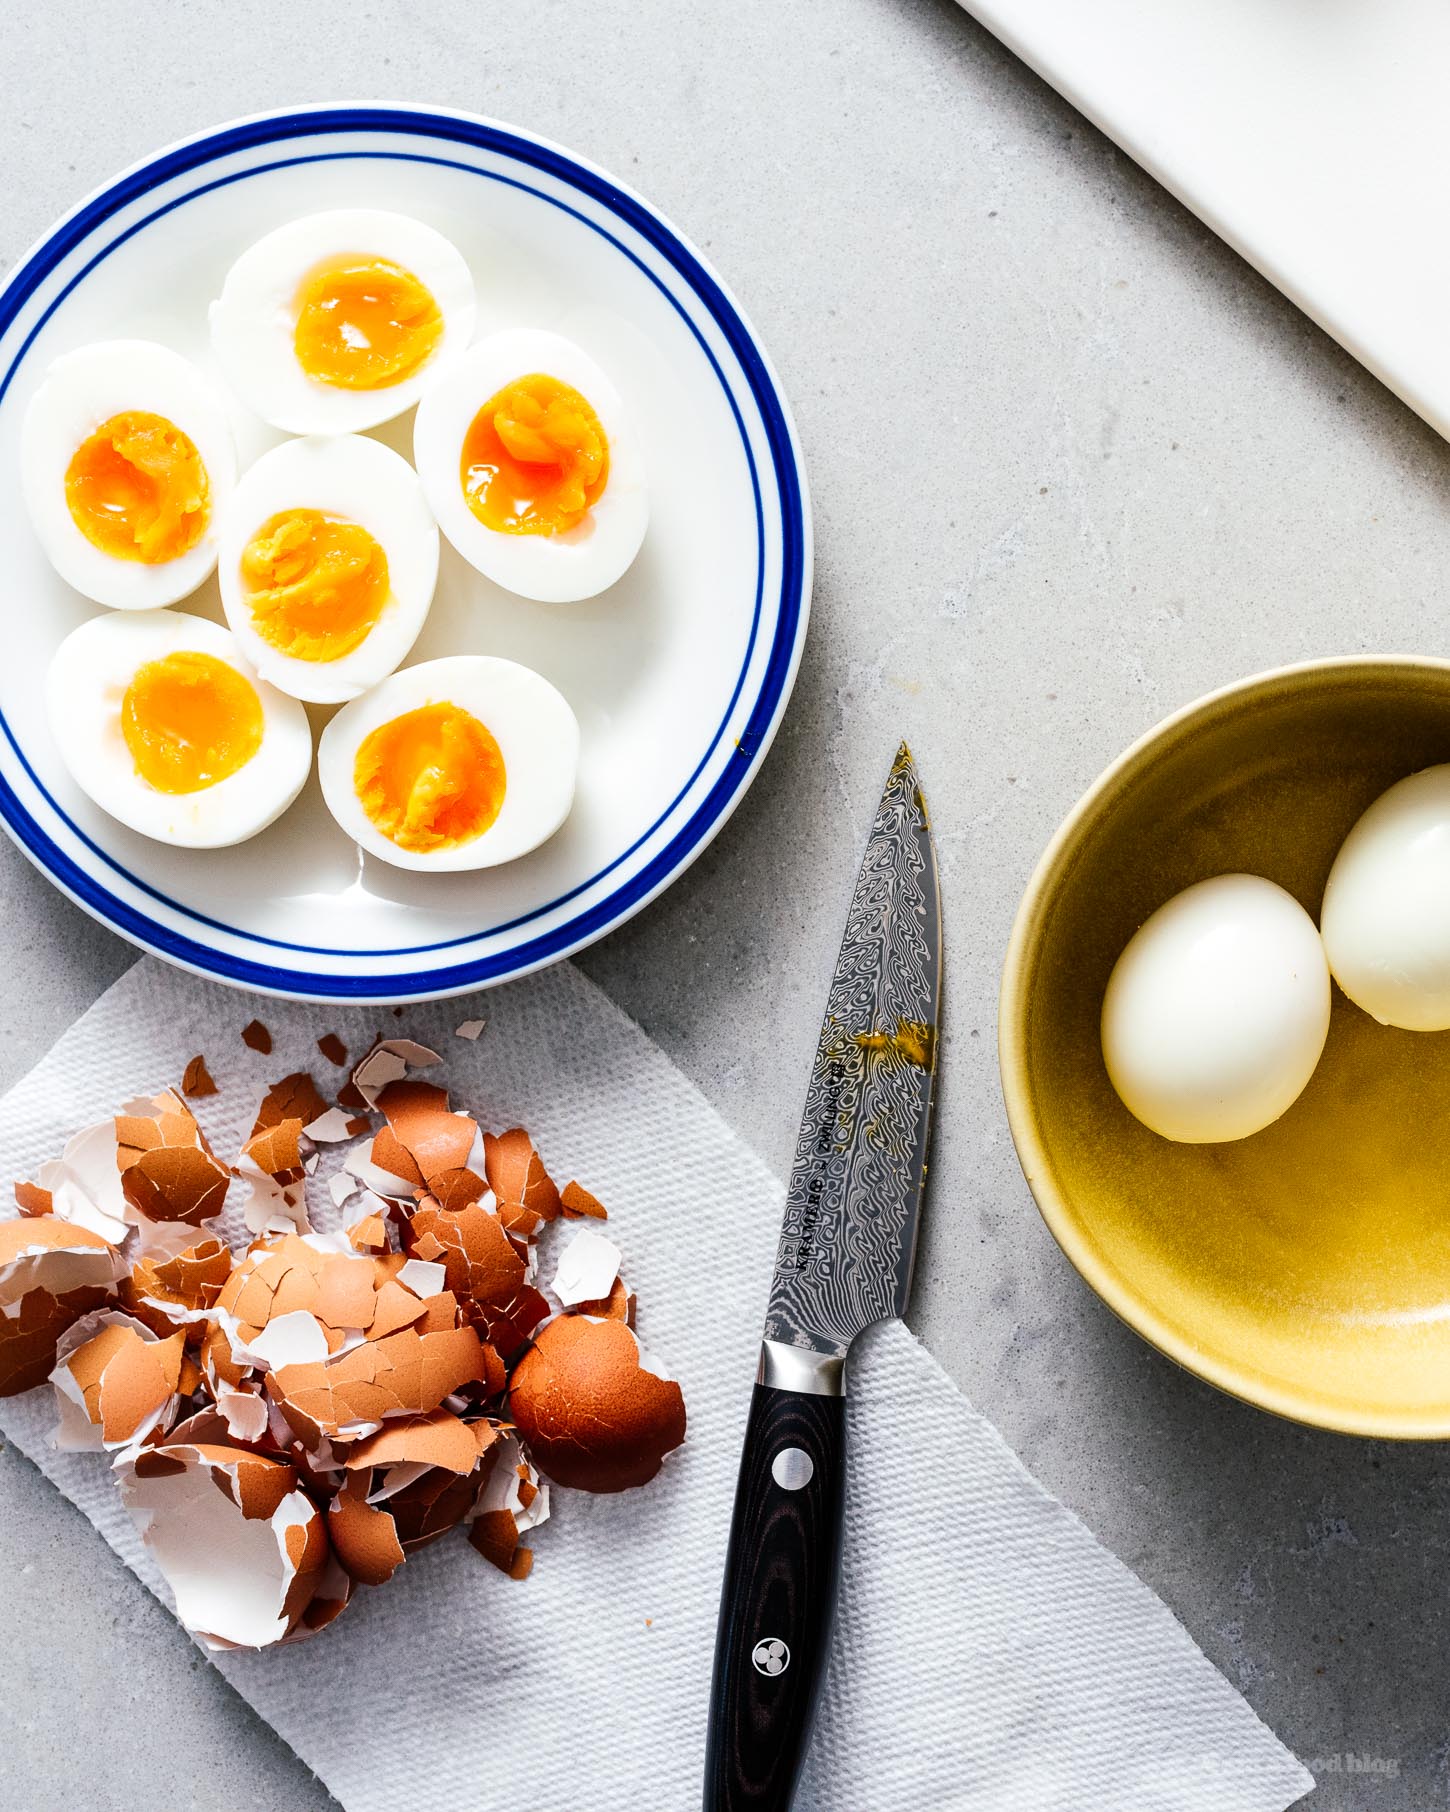 日式蛋沙拉三明治！你喜欢鸡蛋沙拉三明治，但想要一个扭曲吗？奶油kewpie mayo和jammy鸡蛋让这个三明治是一个胜利者。就像你在日本度假但更好的三明治;）#sandwiches #eggsalad #japanese #japanesefood #recipes #recipeoftheday #eggs